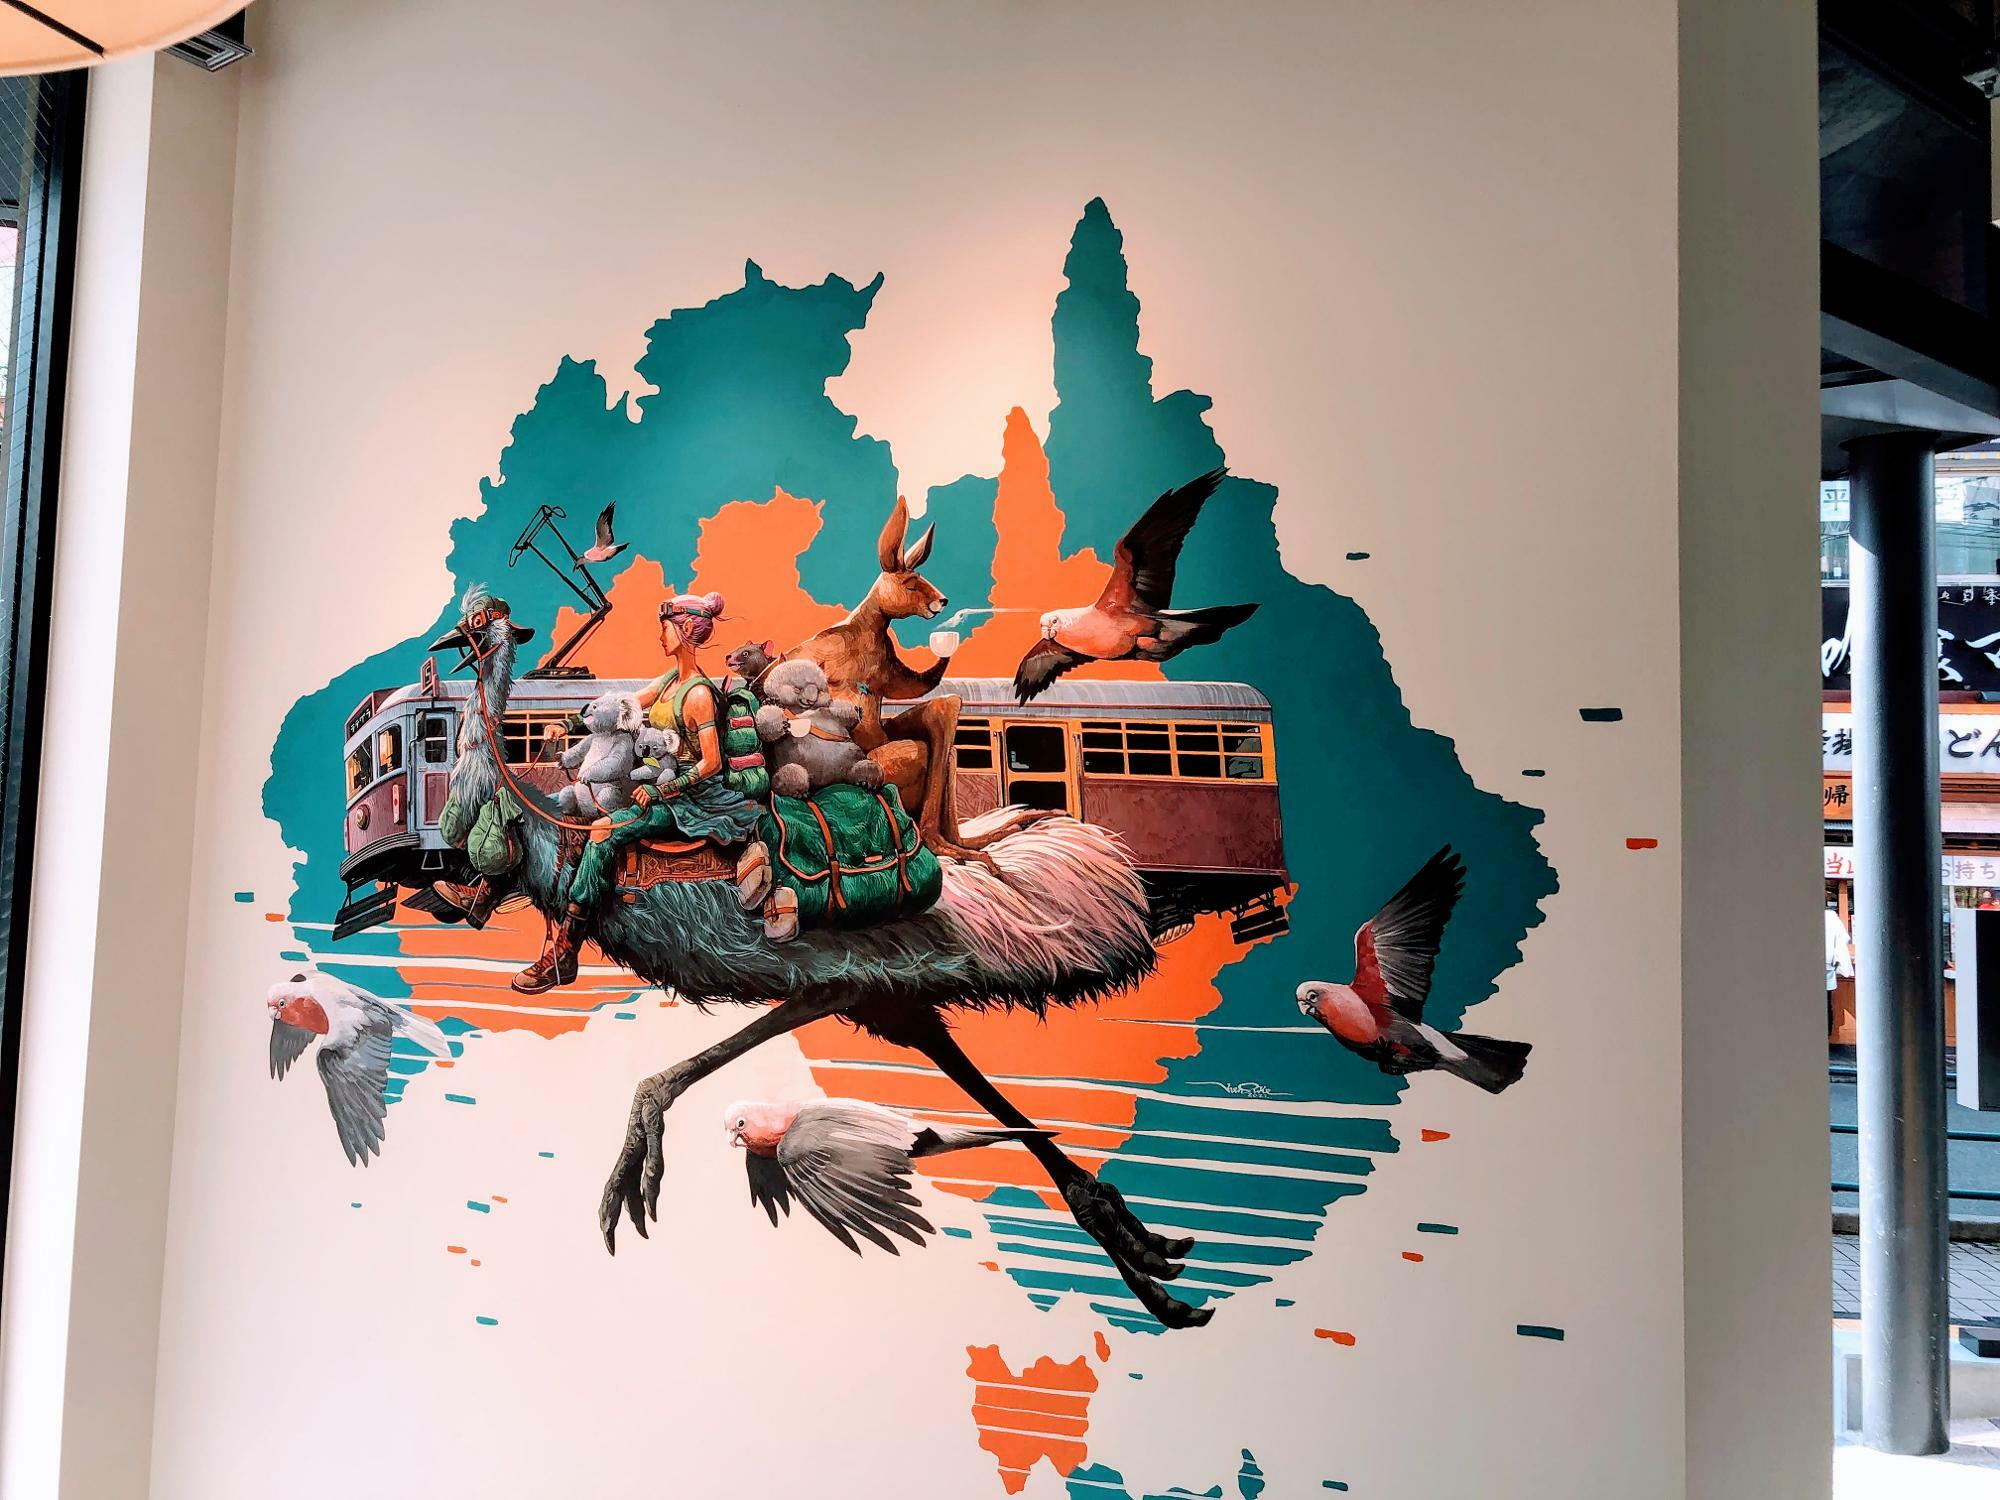 一階の半個室部分の壁にもオーストラリア大陸をモチーフにしたアート作品が